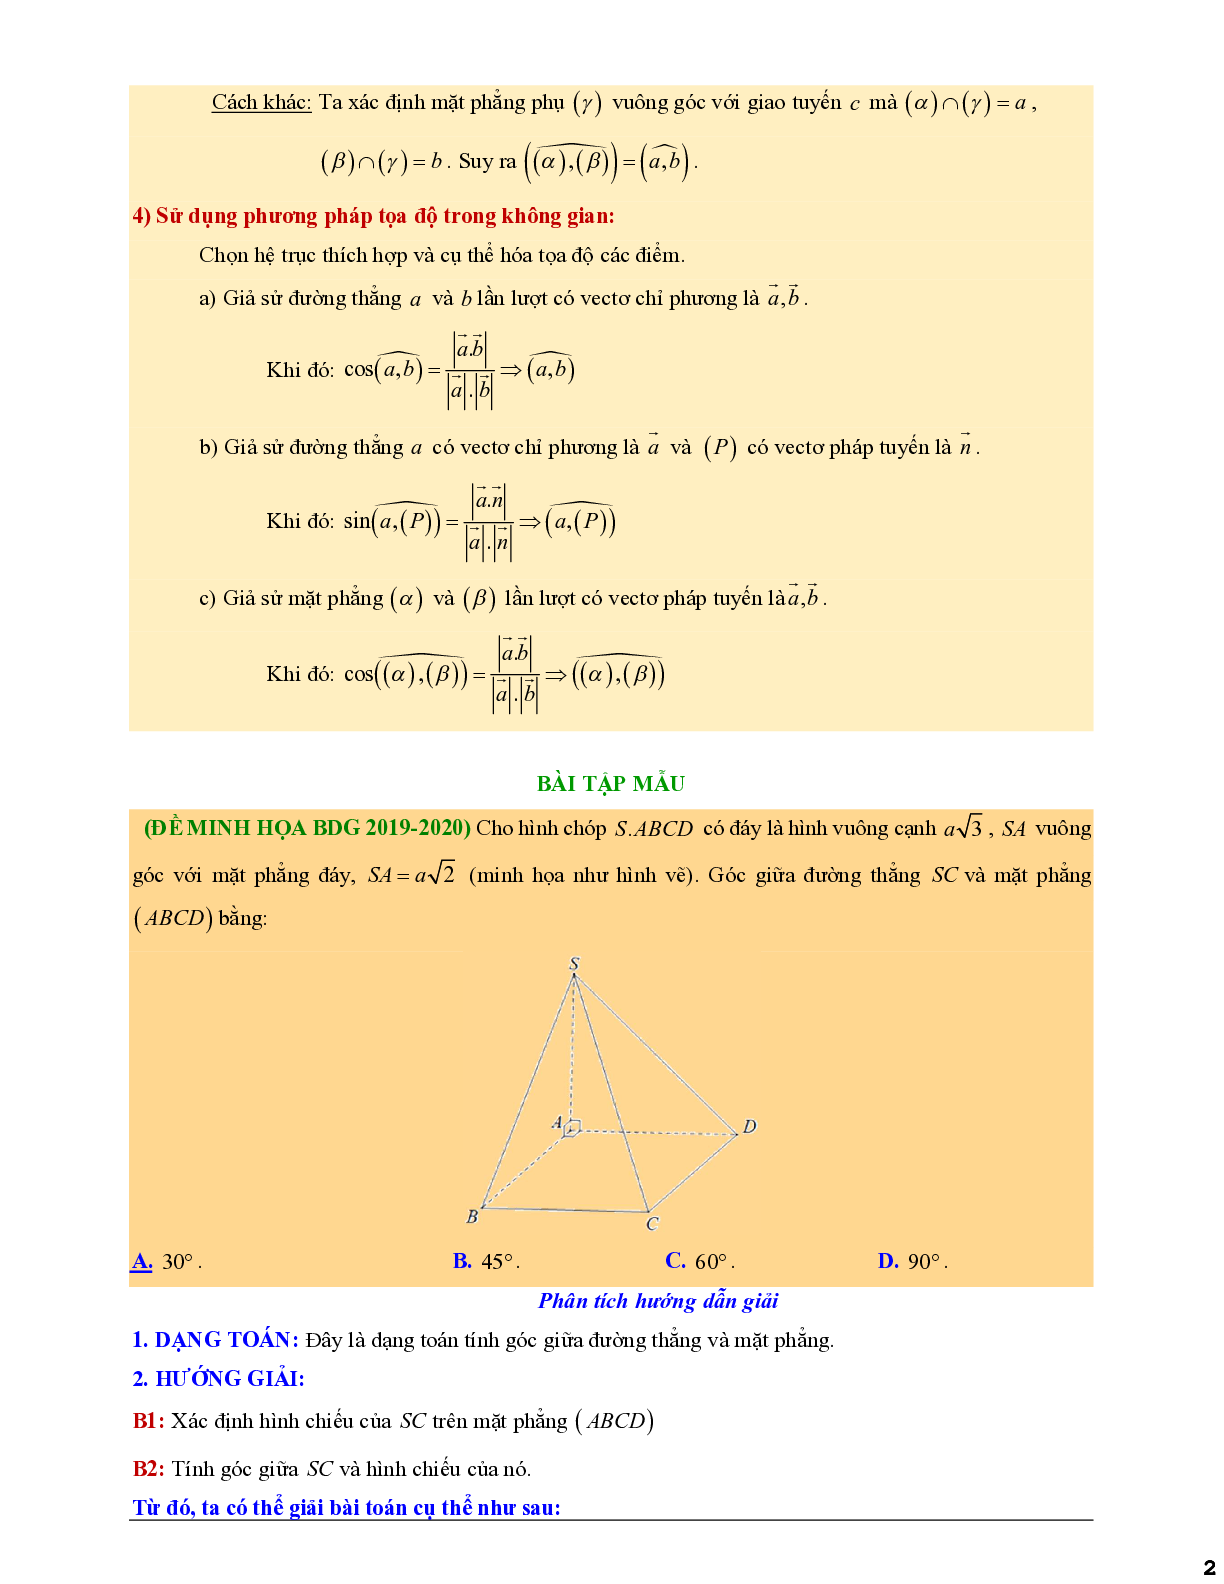 Xác định góc giữa hai đưởng thẳng và mặt phẳng - giữa hai mặt phẳng (trang 2)